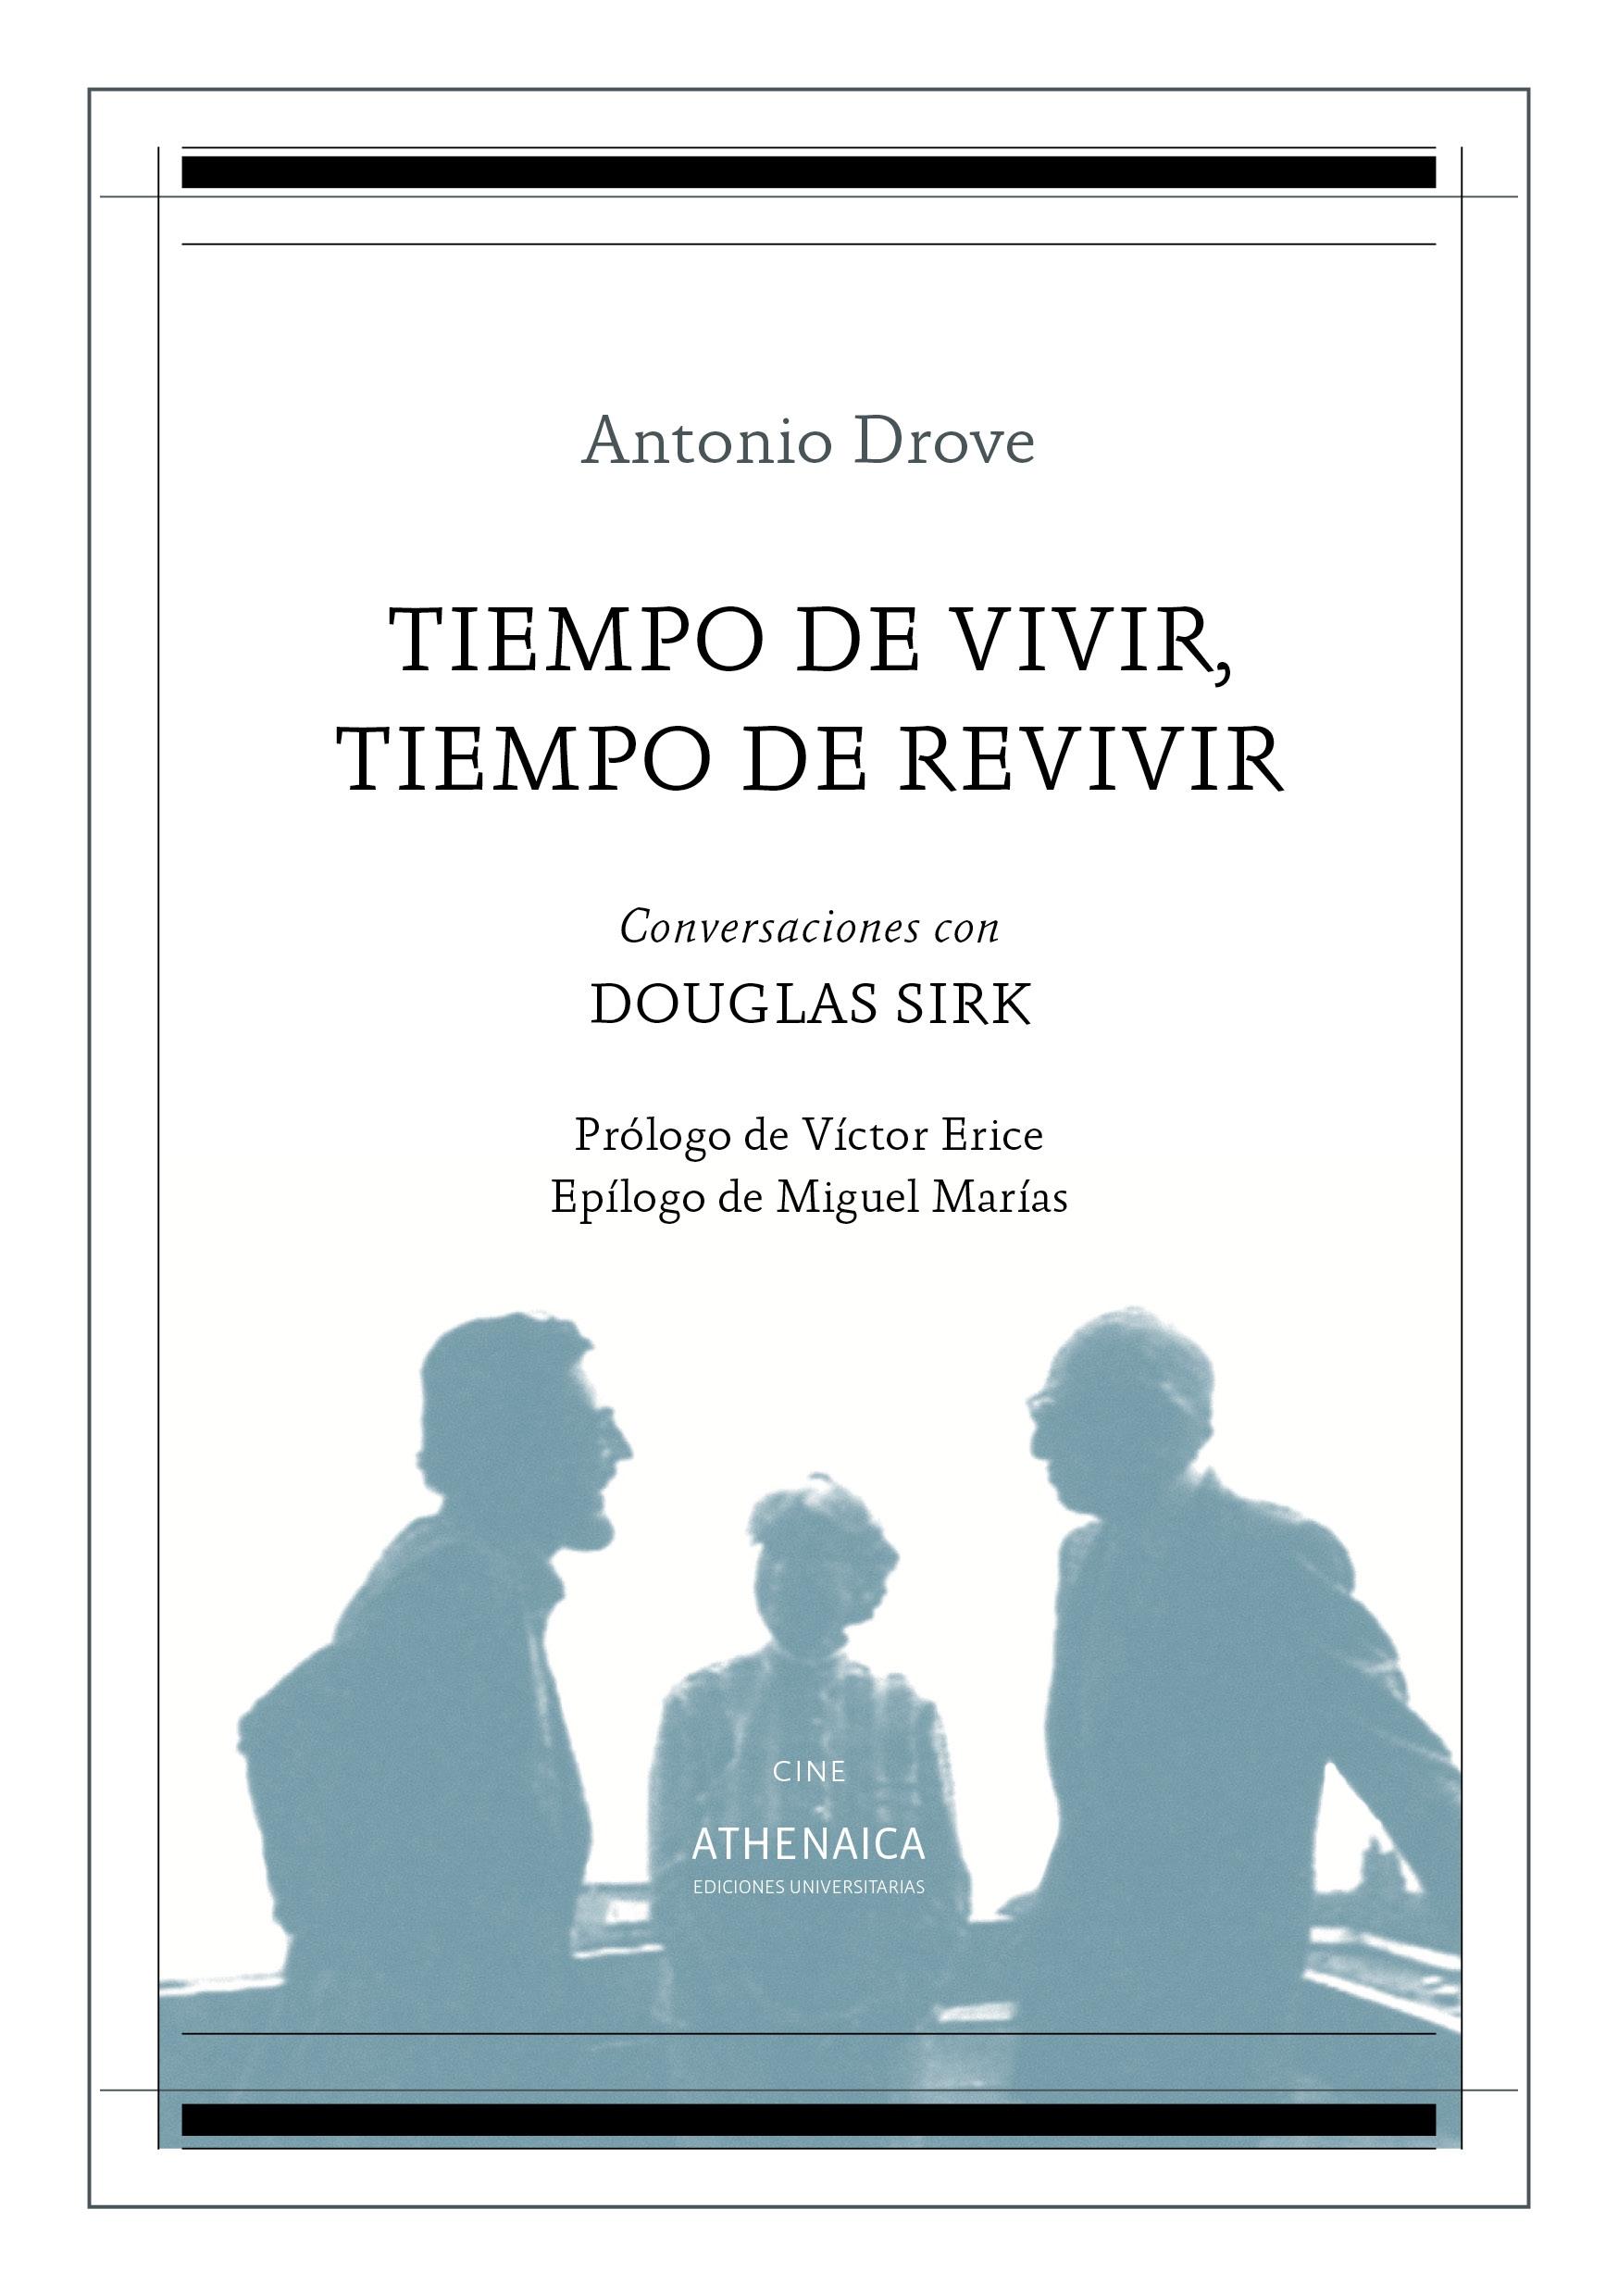 Tiempo de Vivir, Tiempo de Revivir "Conversaciones con Douglas Sirk". 